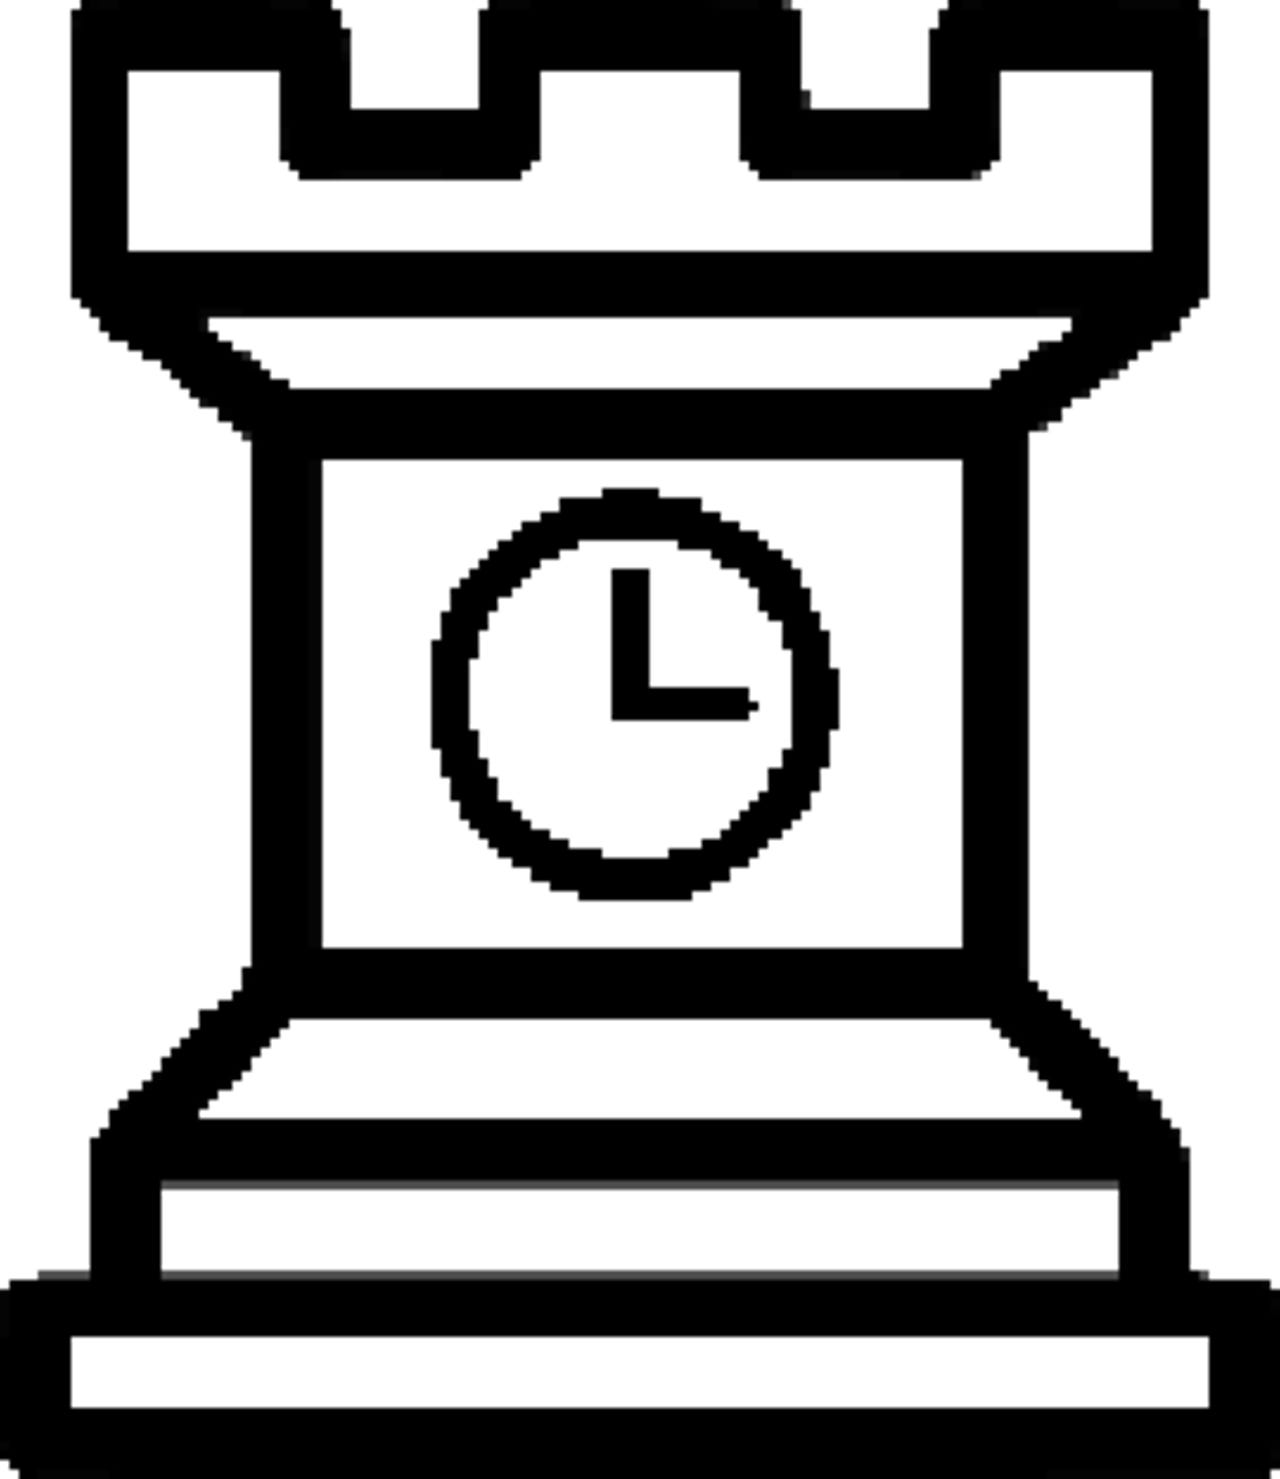 ntpsec-logo-clock-tower.png